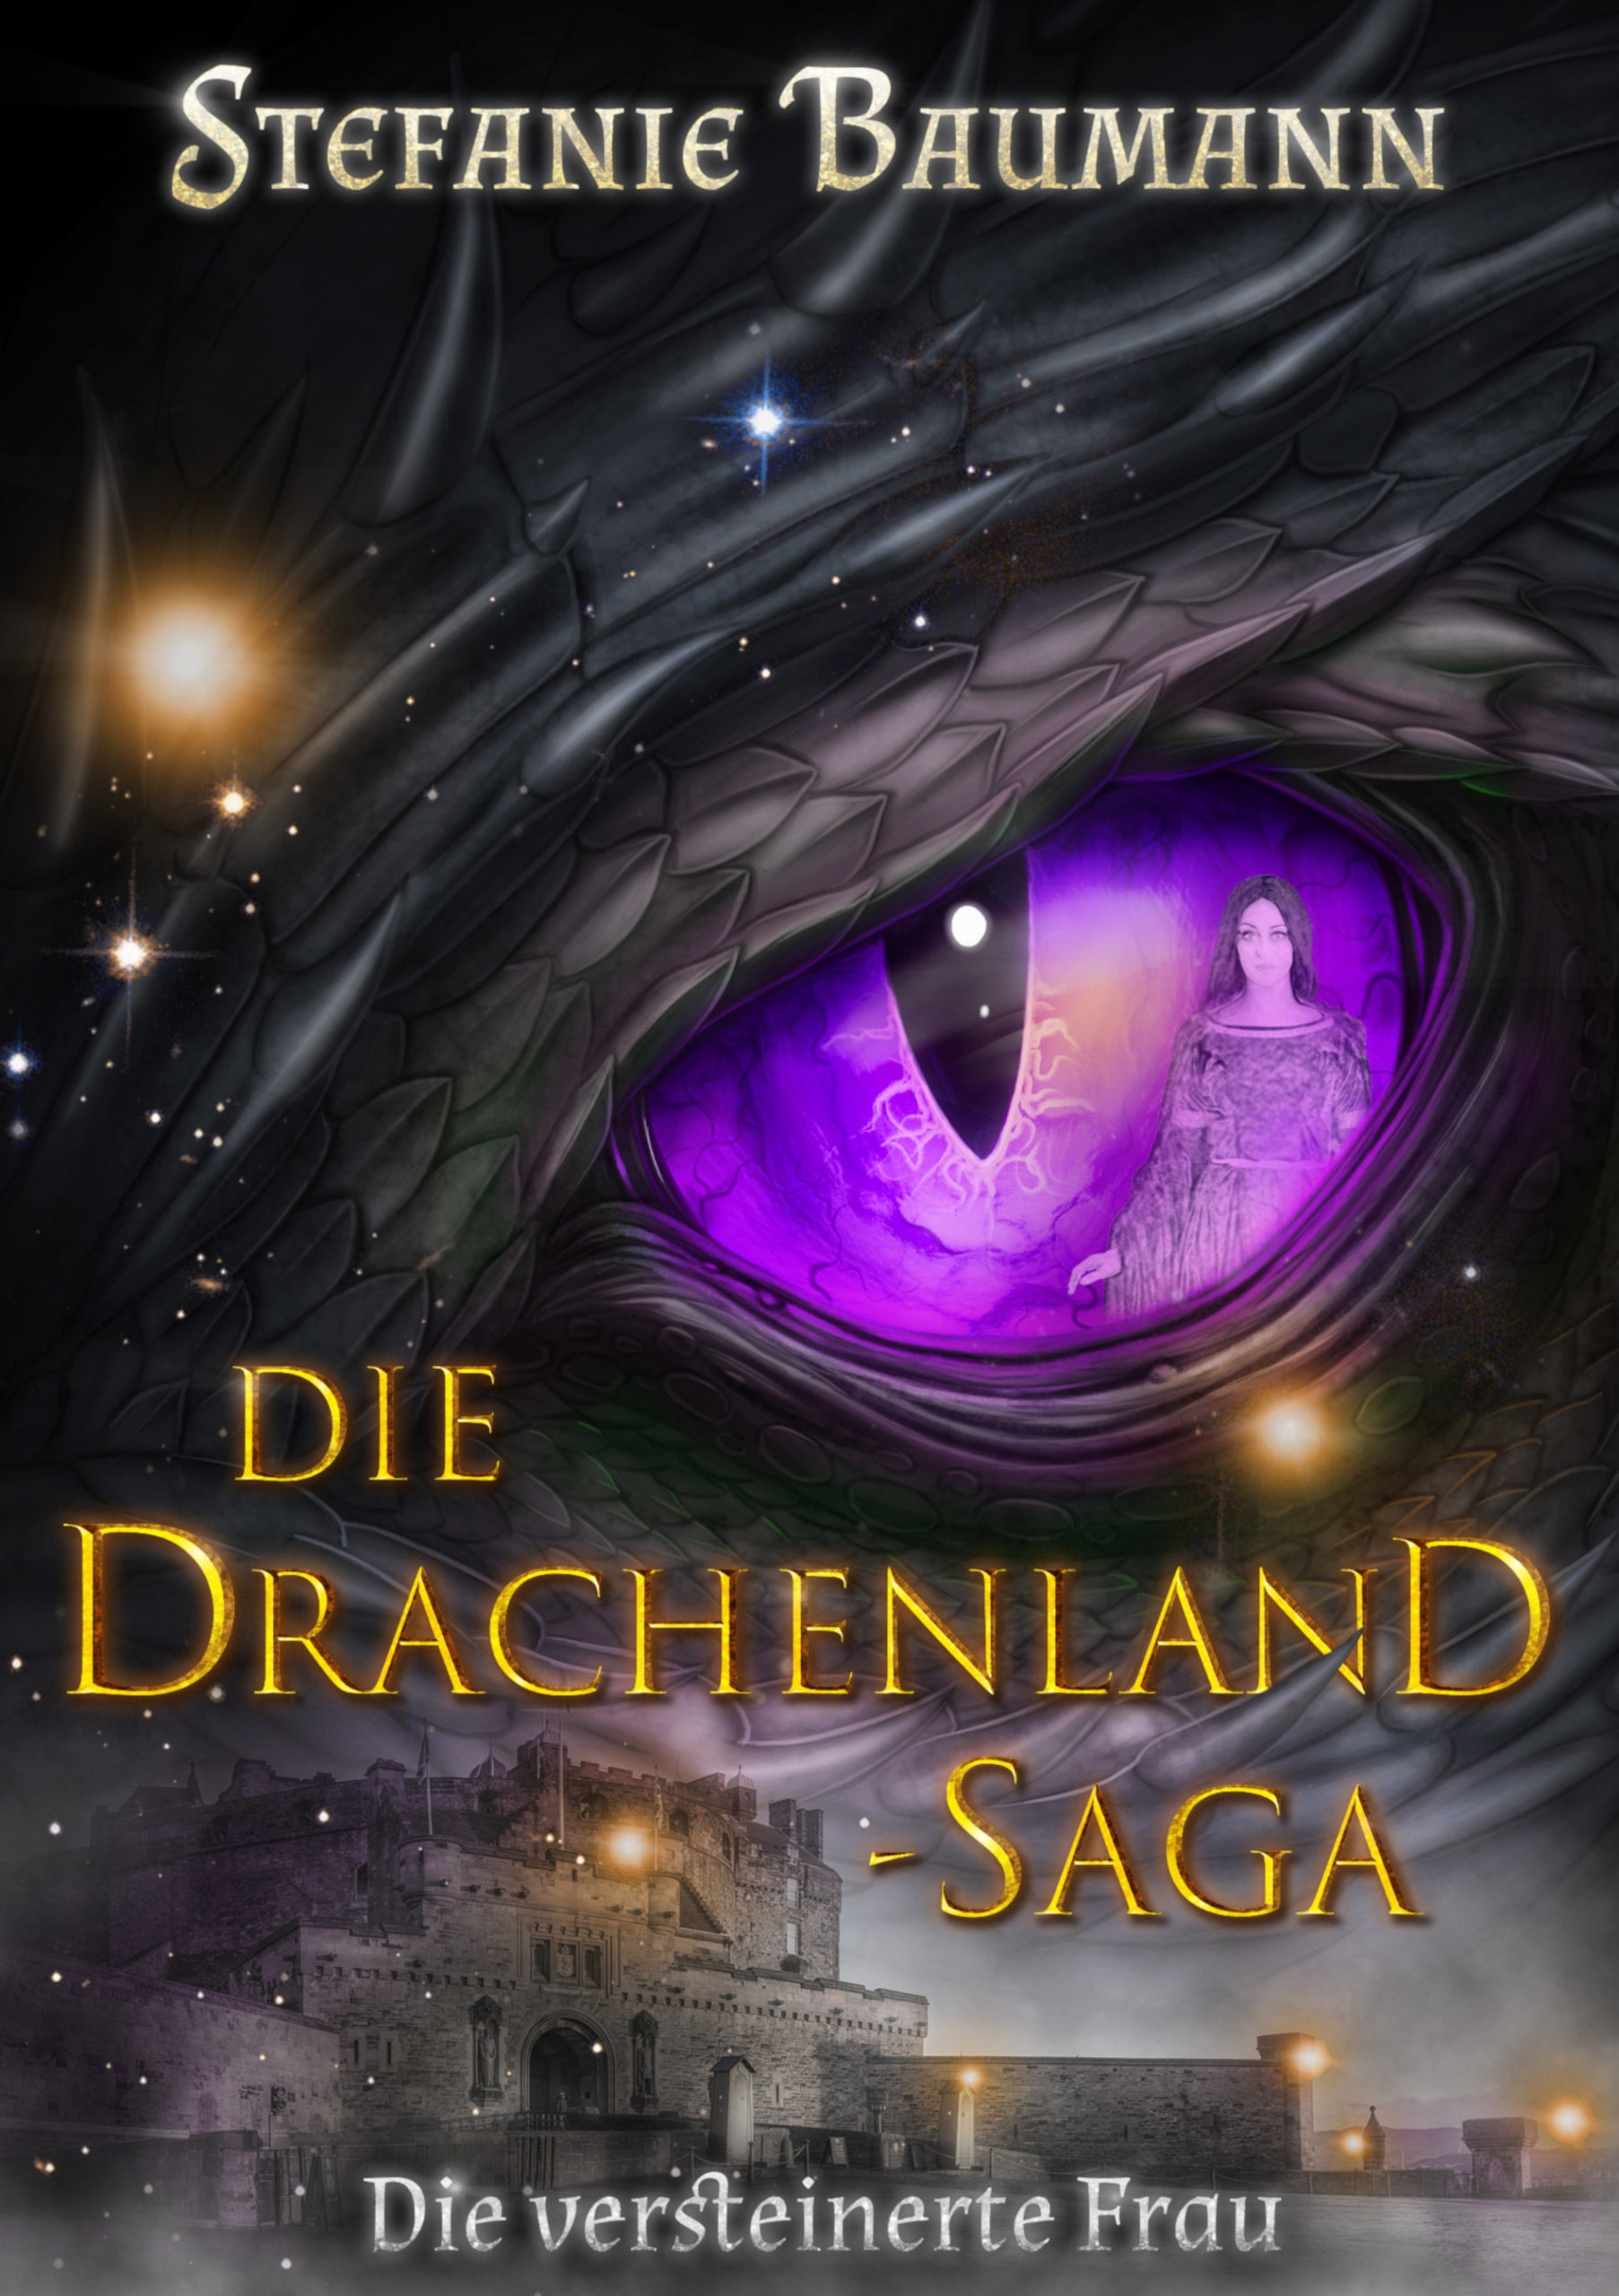 Die Drachenland-Saga Band 3 "Die versteinerte Frau"